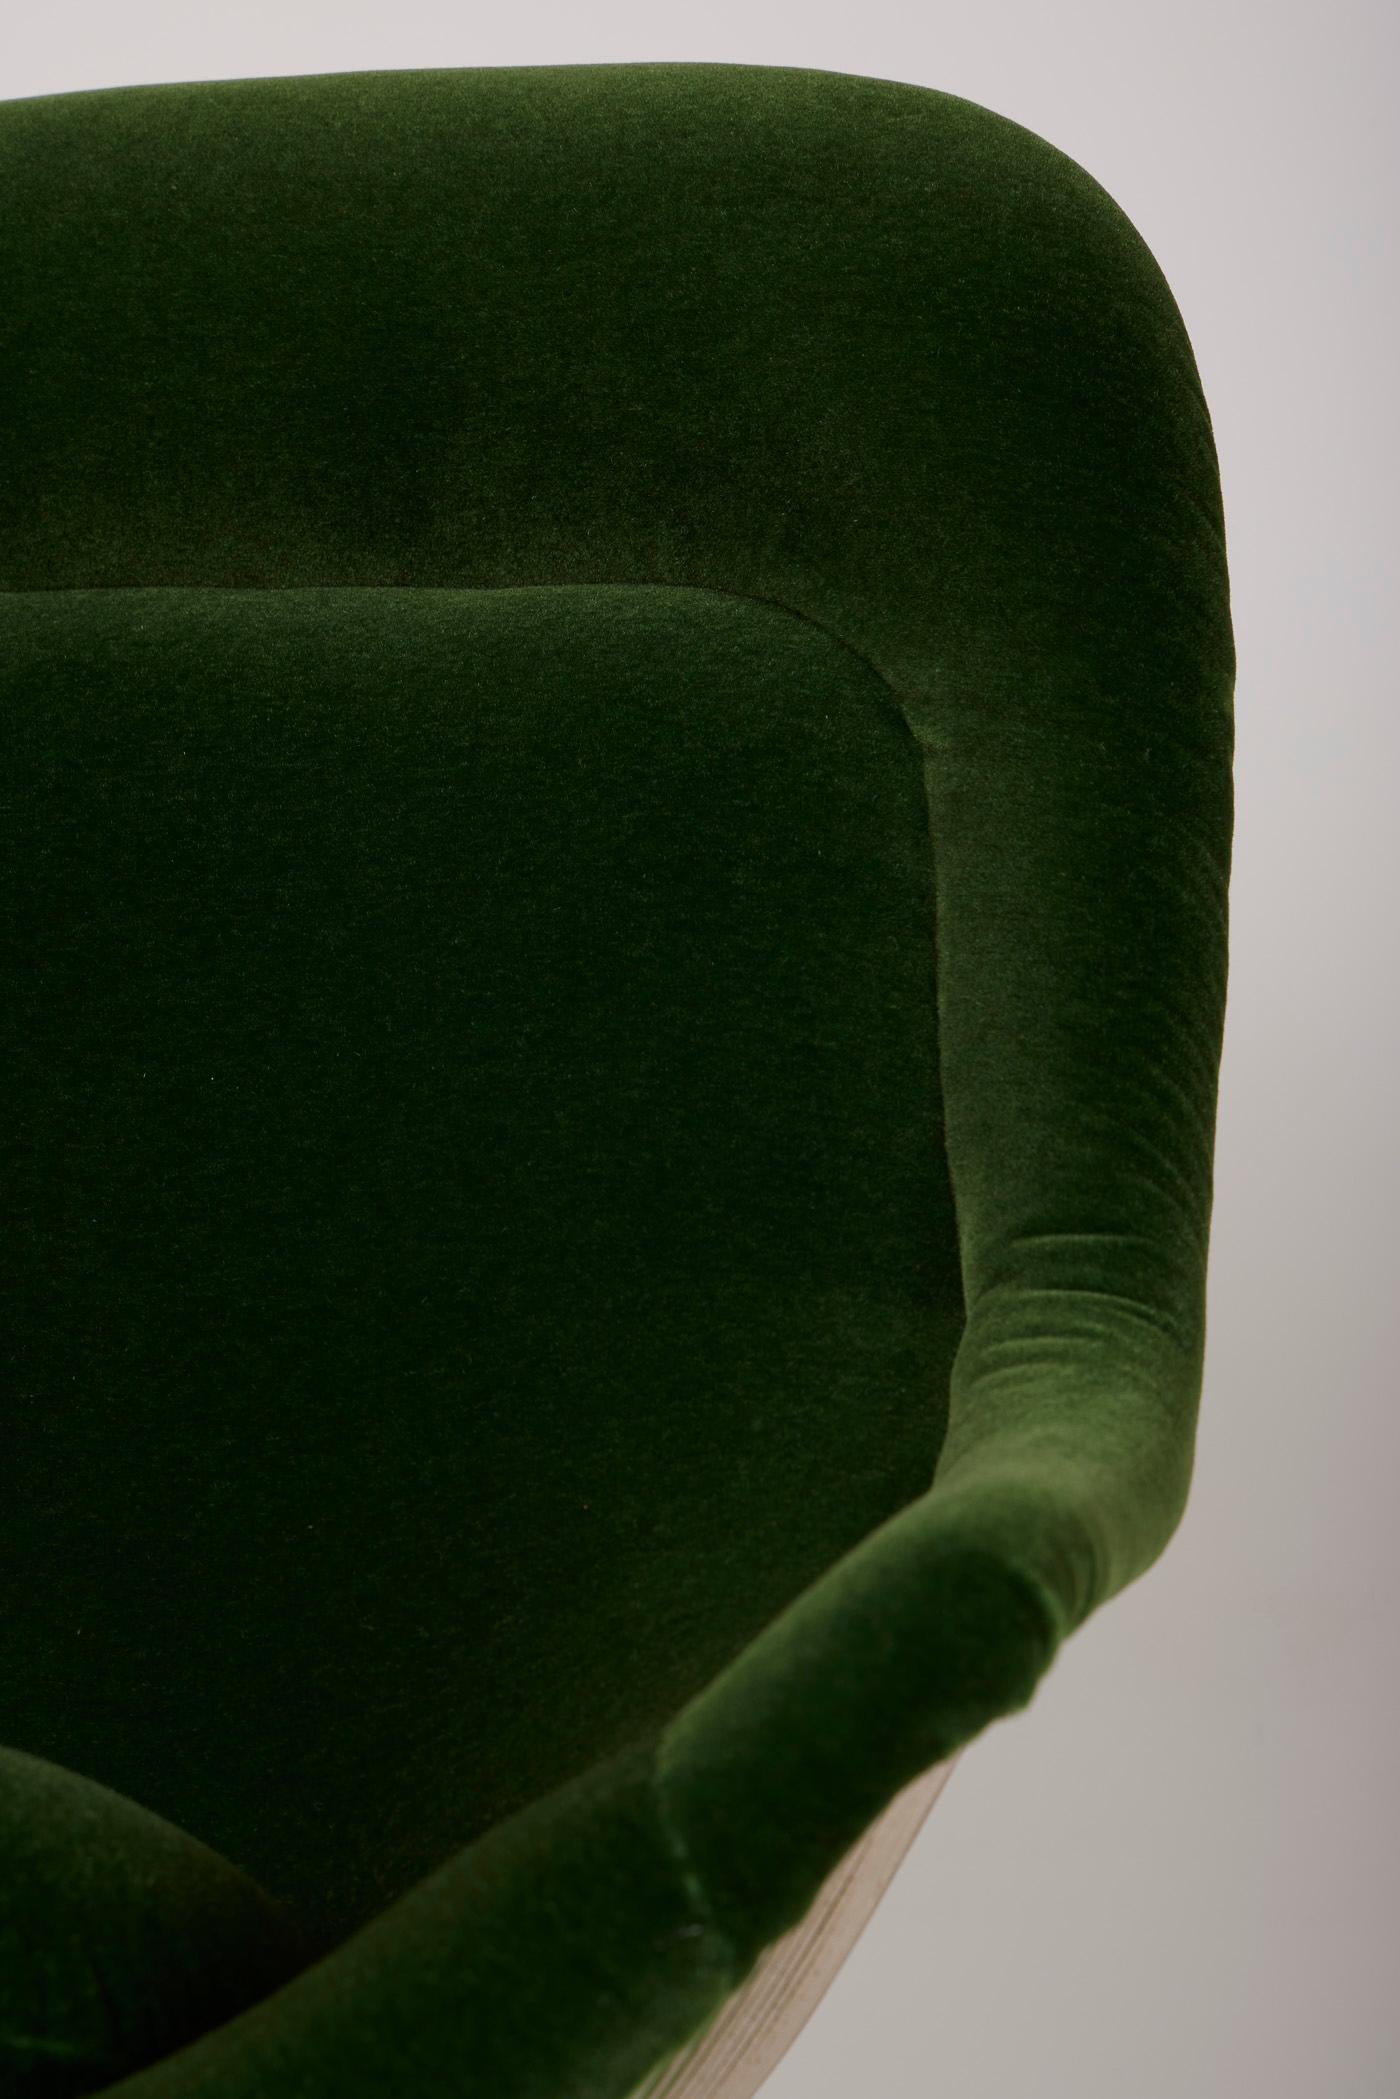 Warren Platner armchair In Excellent Condition For Sale In PARIS, FR